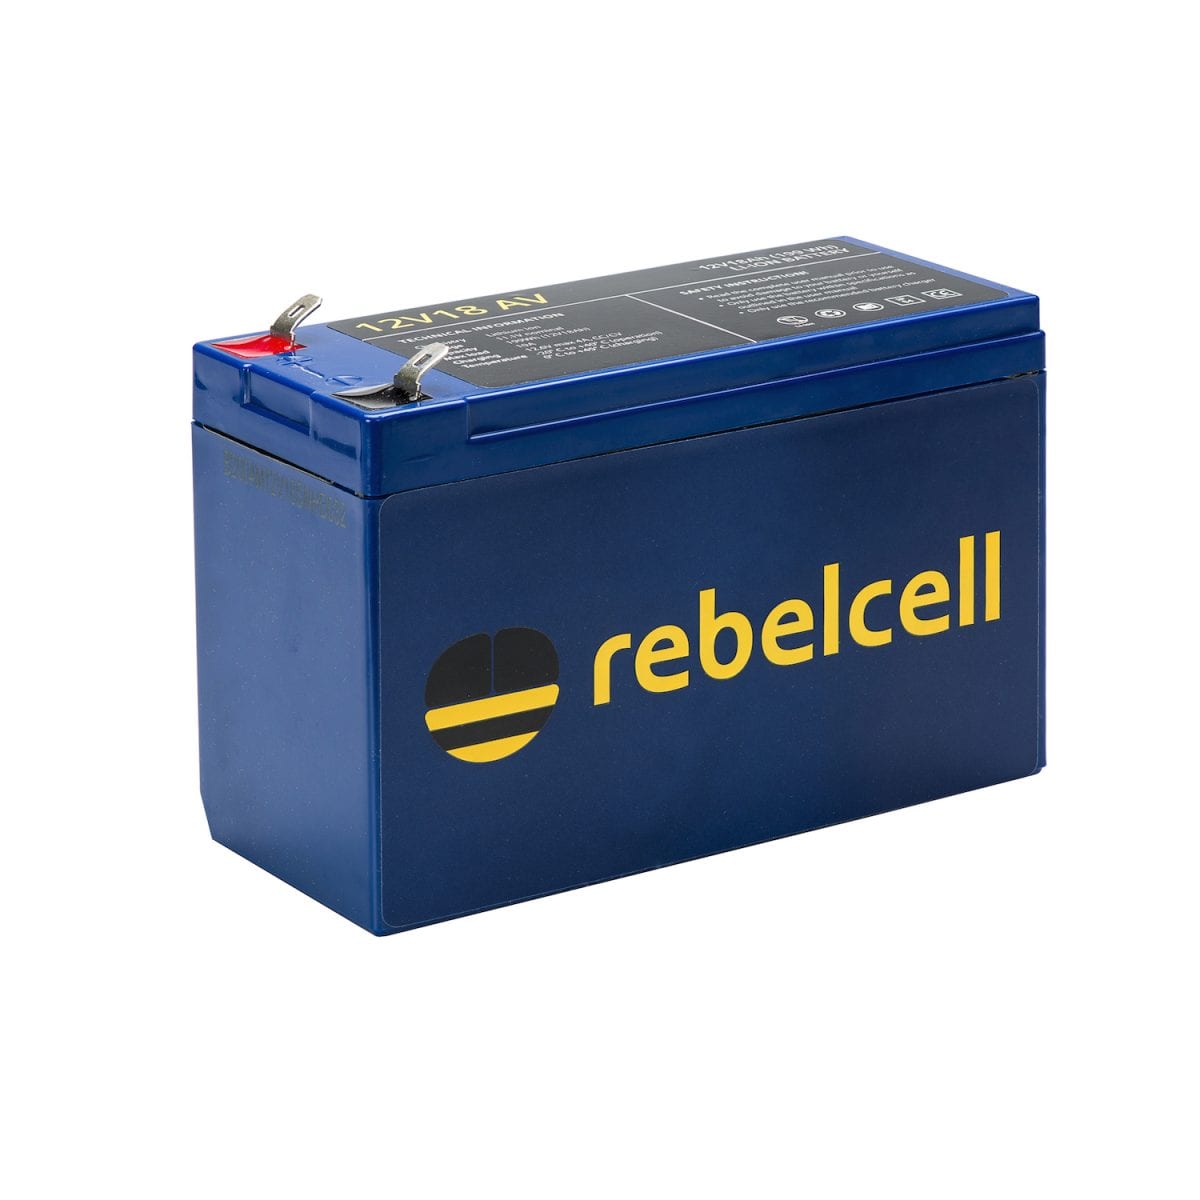 Rebelcell 12V30 AV product image